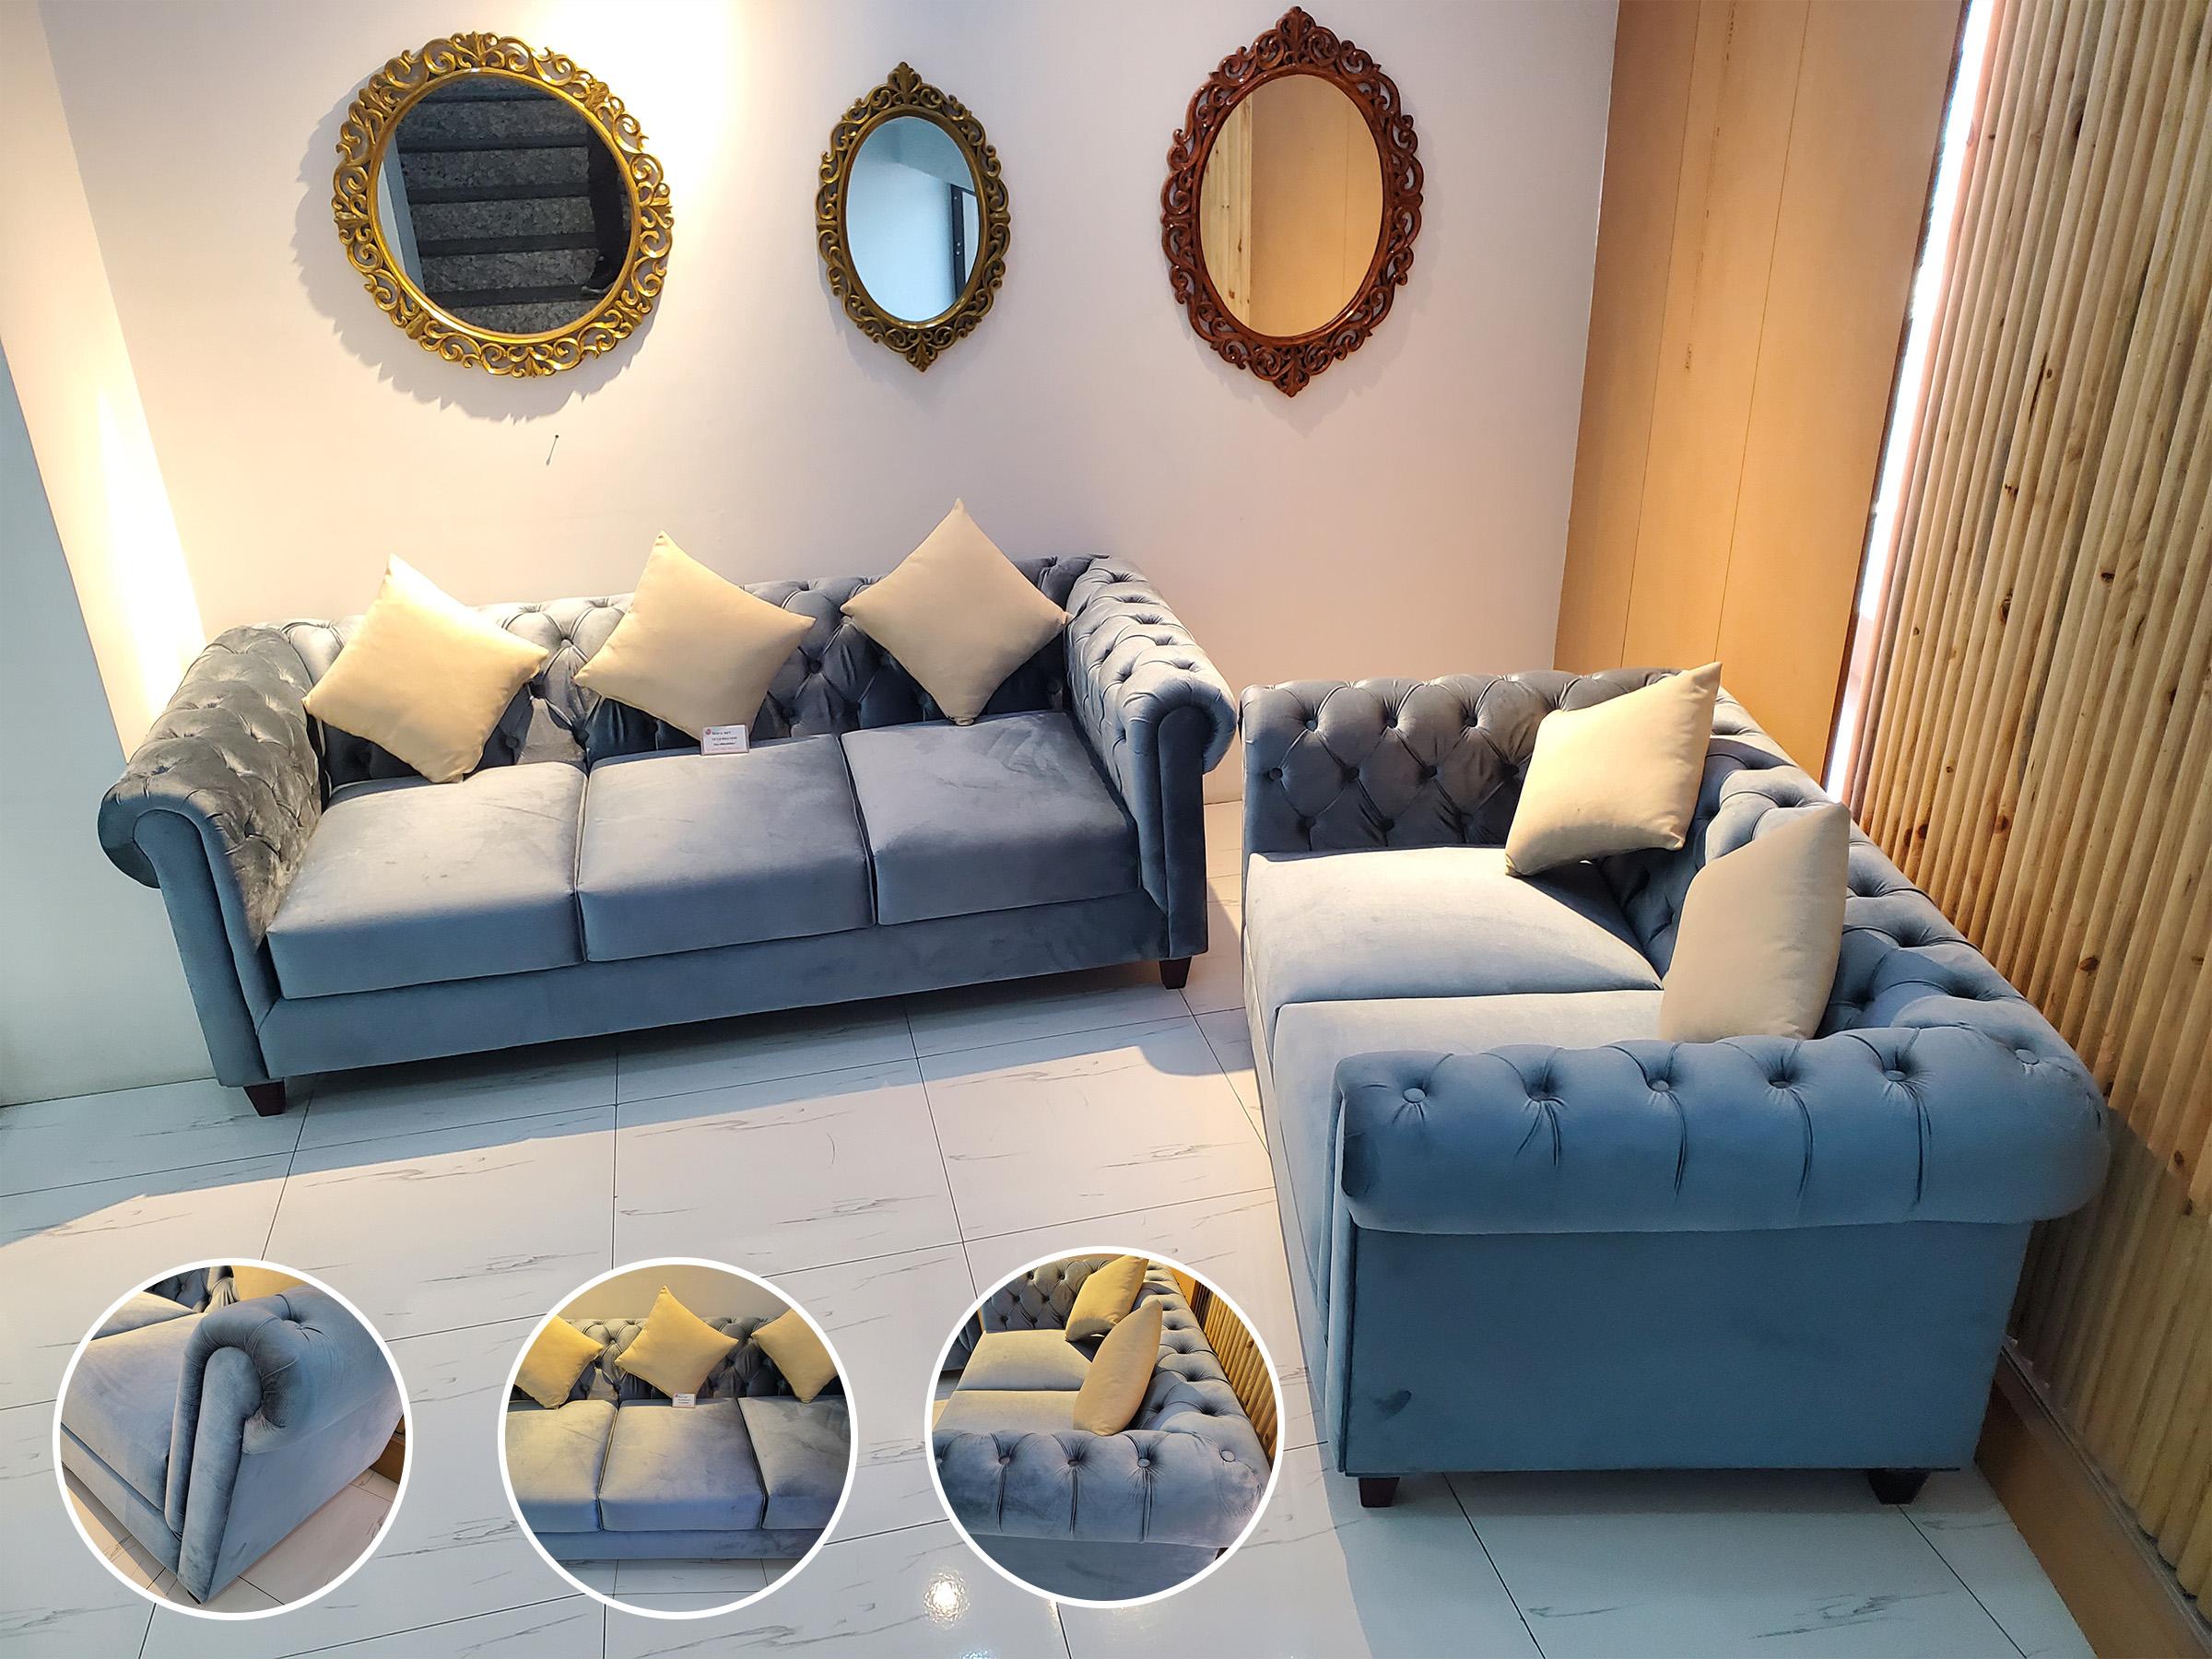 Velvet Sectional Sofa